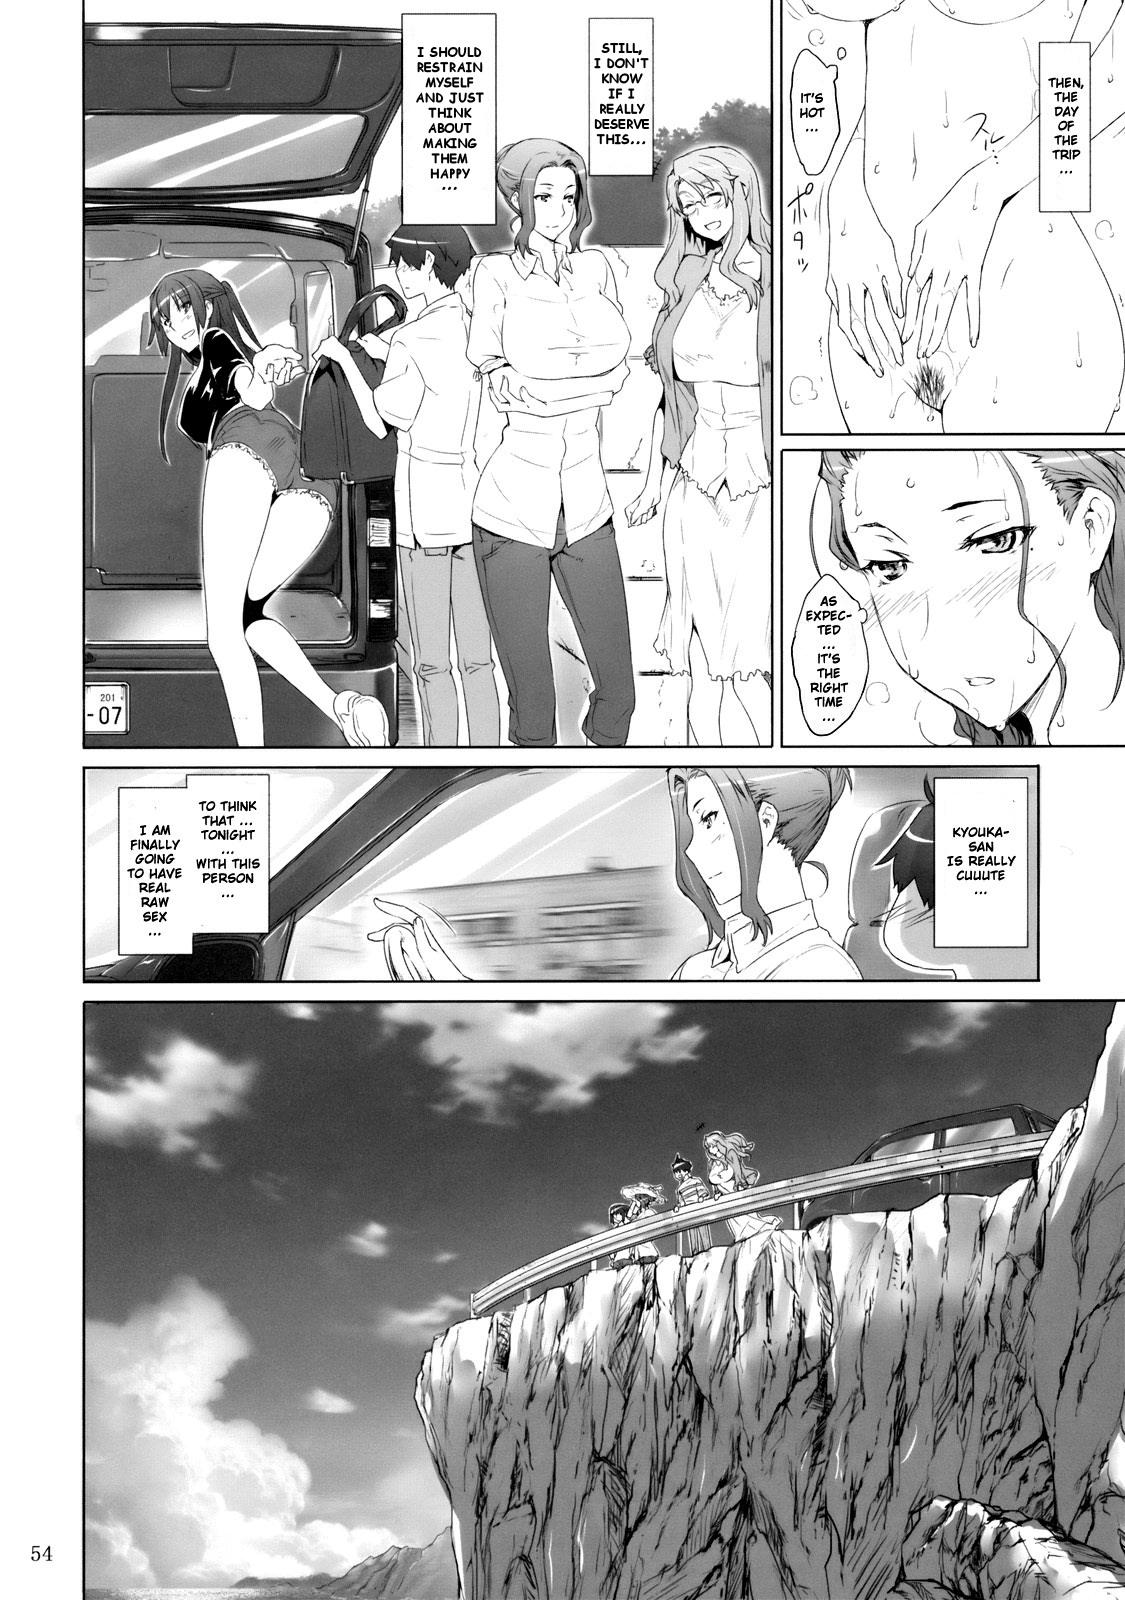 Ladyboy Mtsp - Tachibana-san's Circumstabces WIth a Man 2 Amateur - Page 3